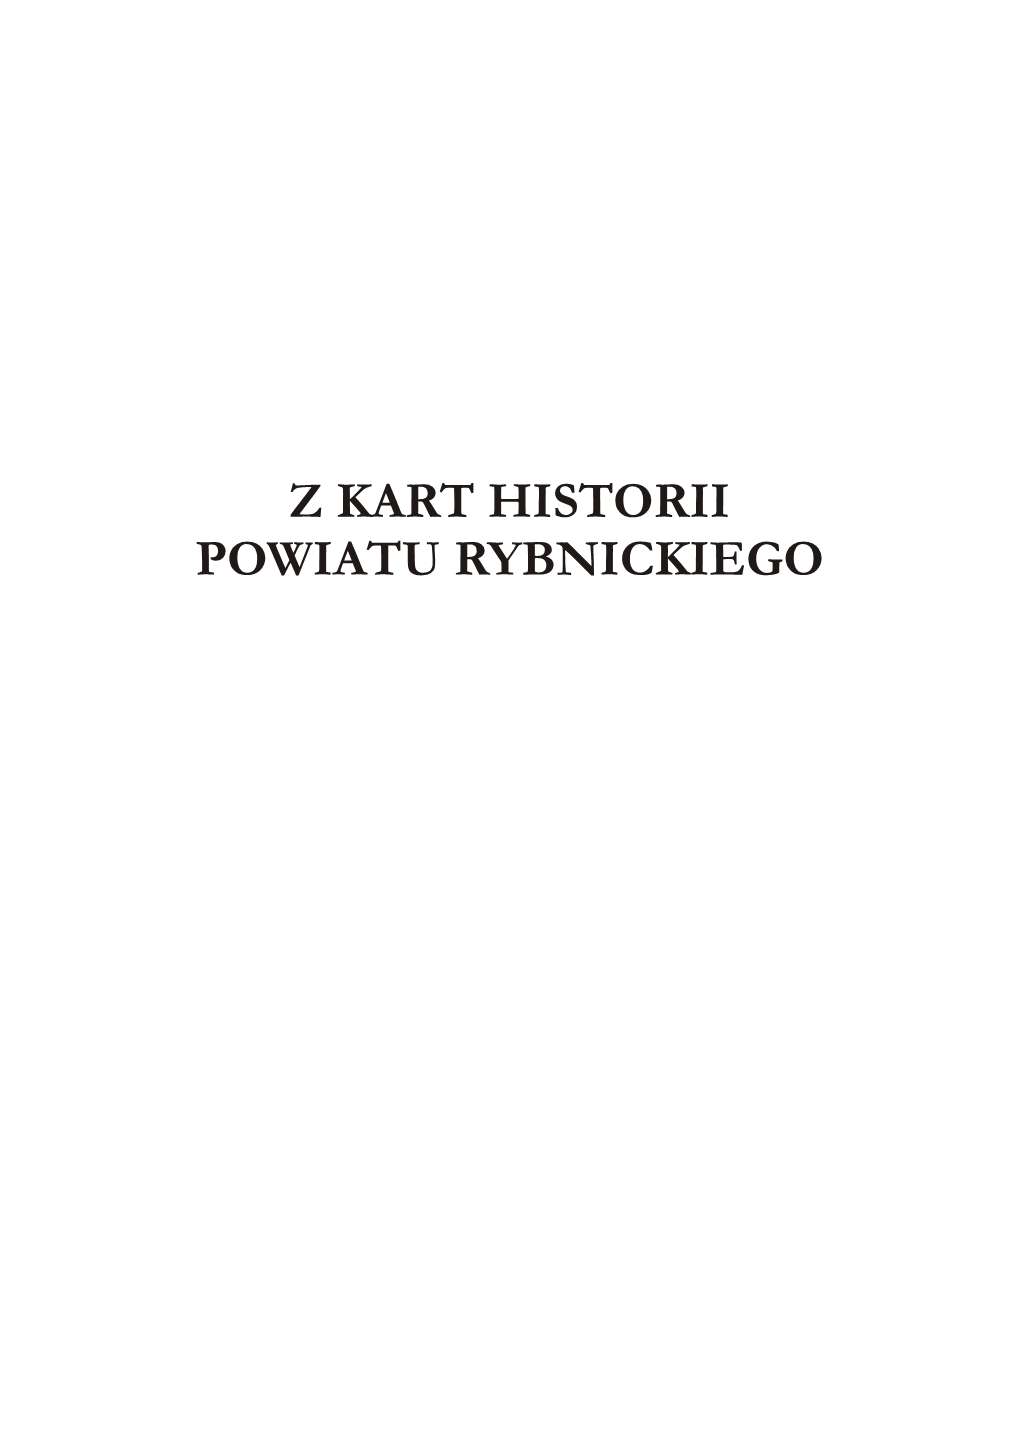 Z Kart Historii Powiatu Rybnickiego